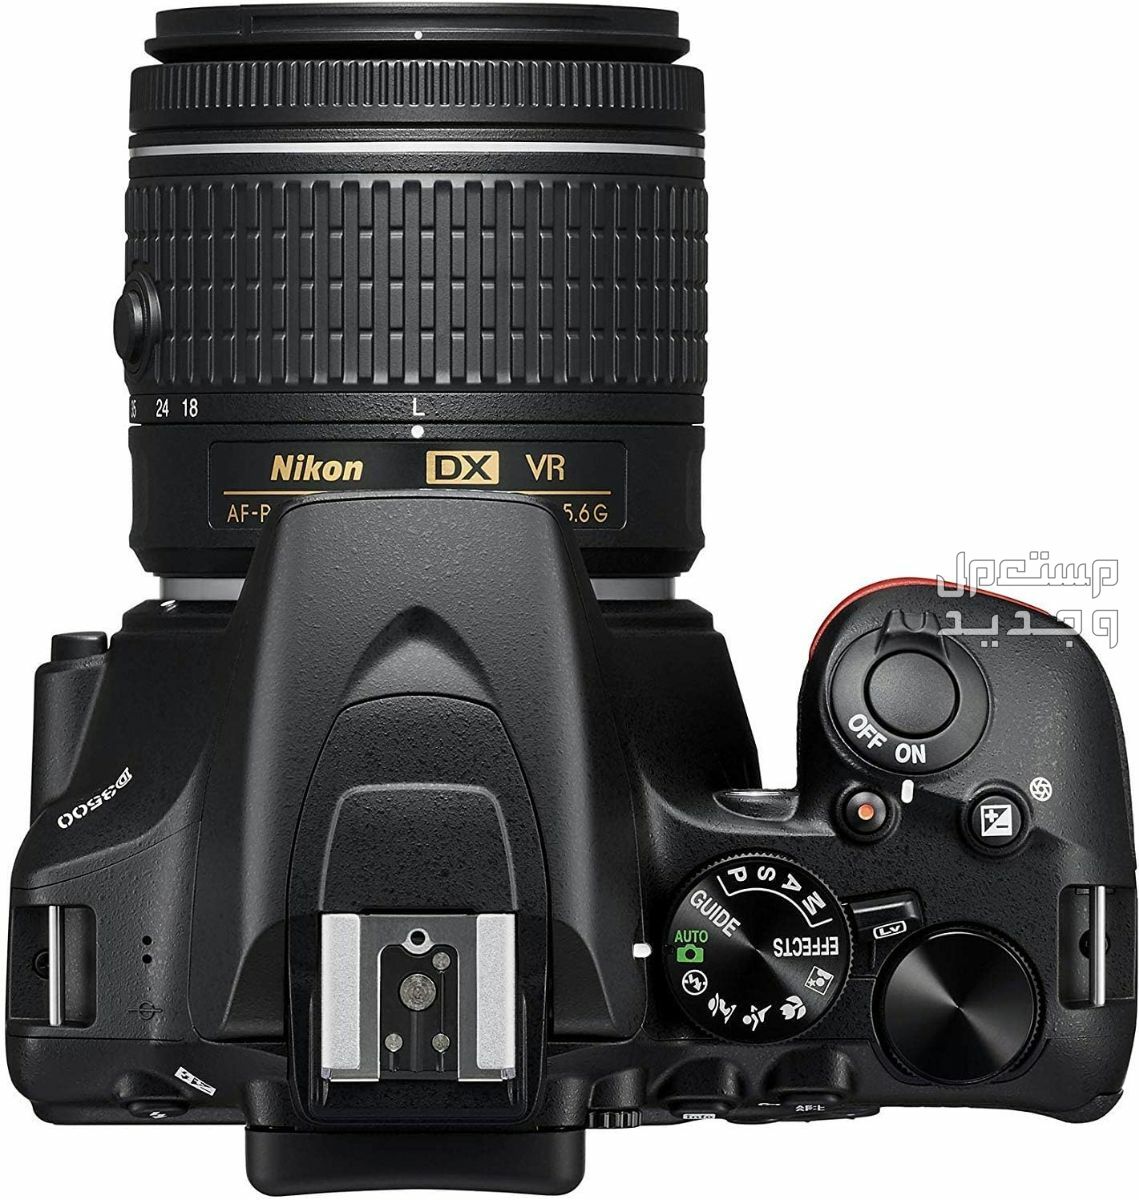 10 كاميرات تصوير ماركات عالمية بأسعار رخيصة في ليبيا سعر كاميرا Nikon D3500